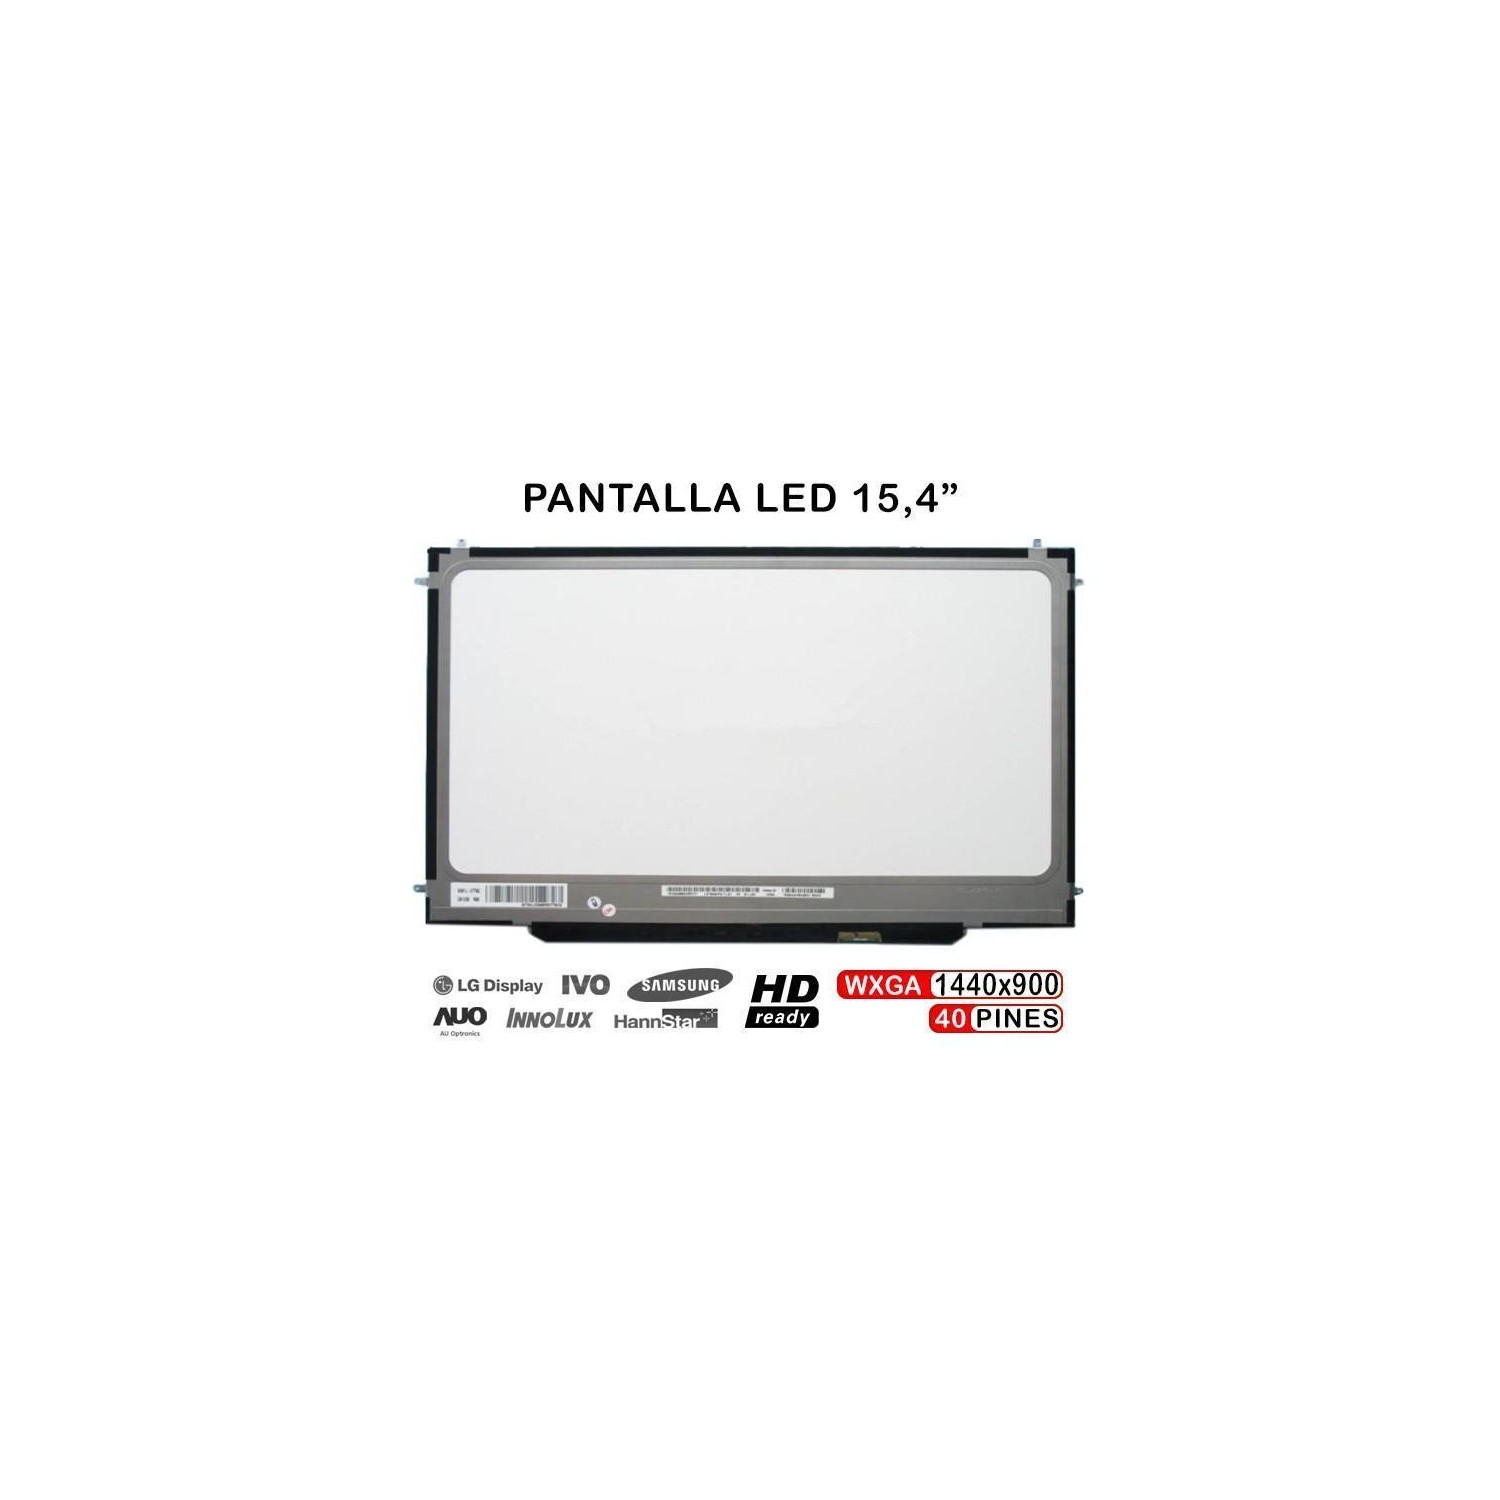 PANTALLA LED PARA APPLE MACBOOK PRO A1286  N154C6-L04 LP154WP3 LP154WP4 TLA1